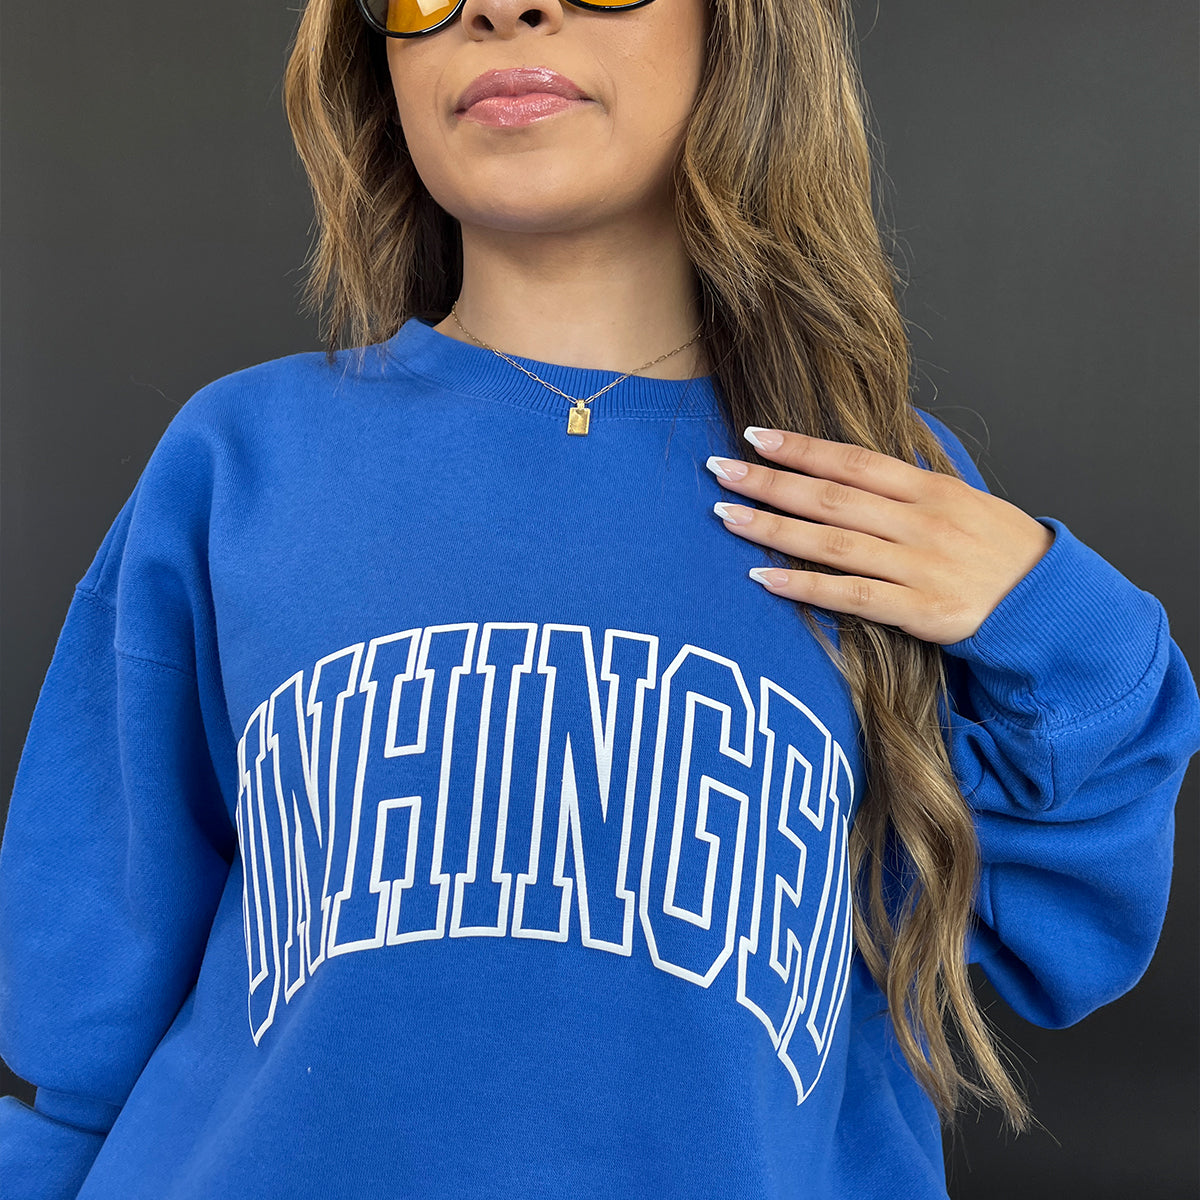 Unhinged Collegiate Sweatshirt